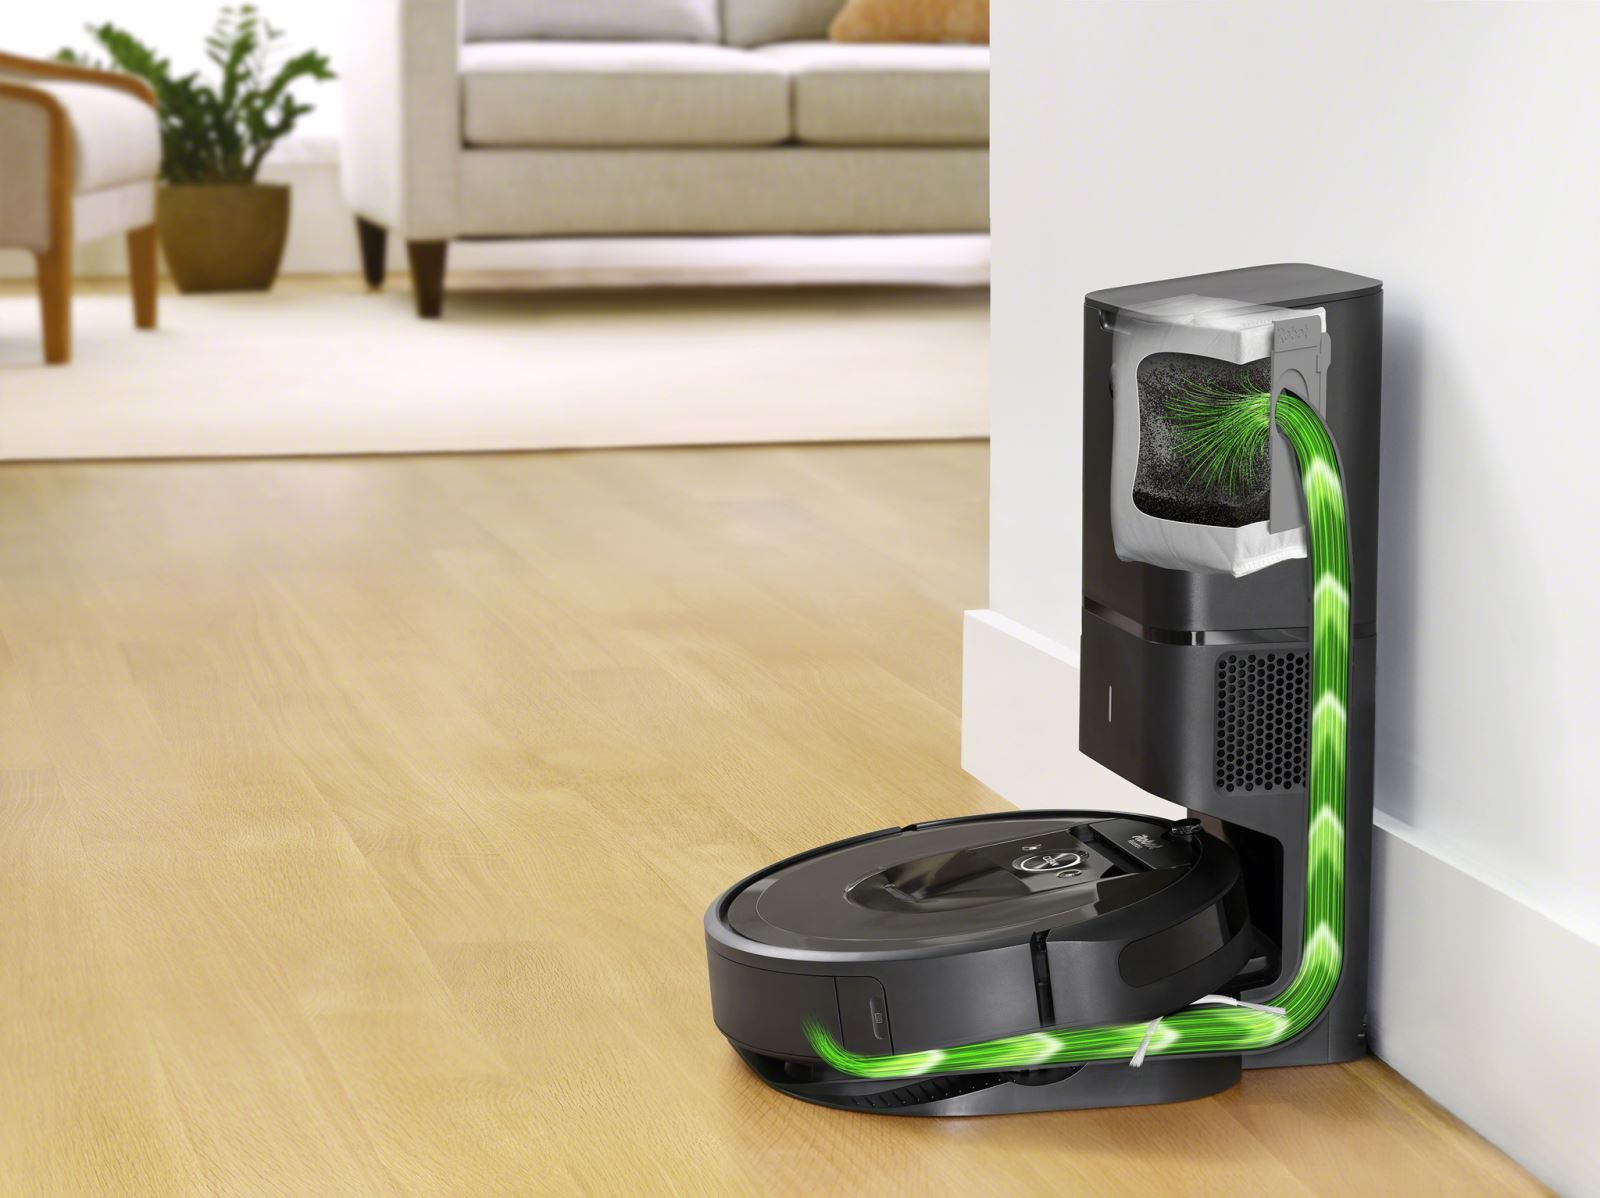 Robotický vysavač iRobot Roomba i7+ / Braava jet m6